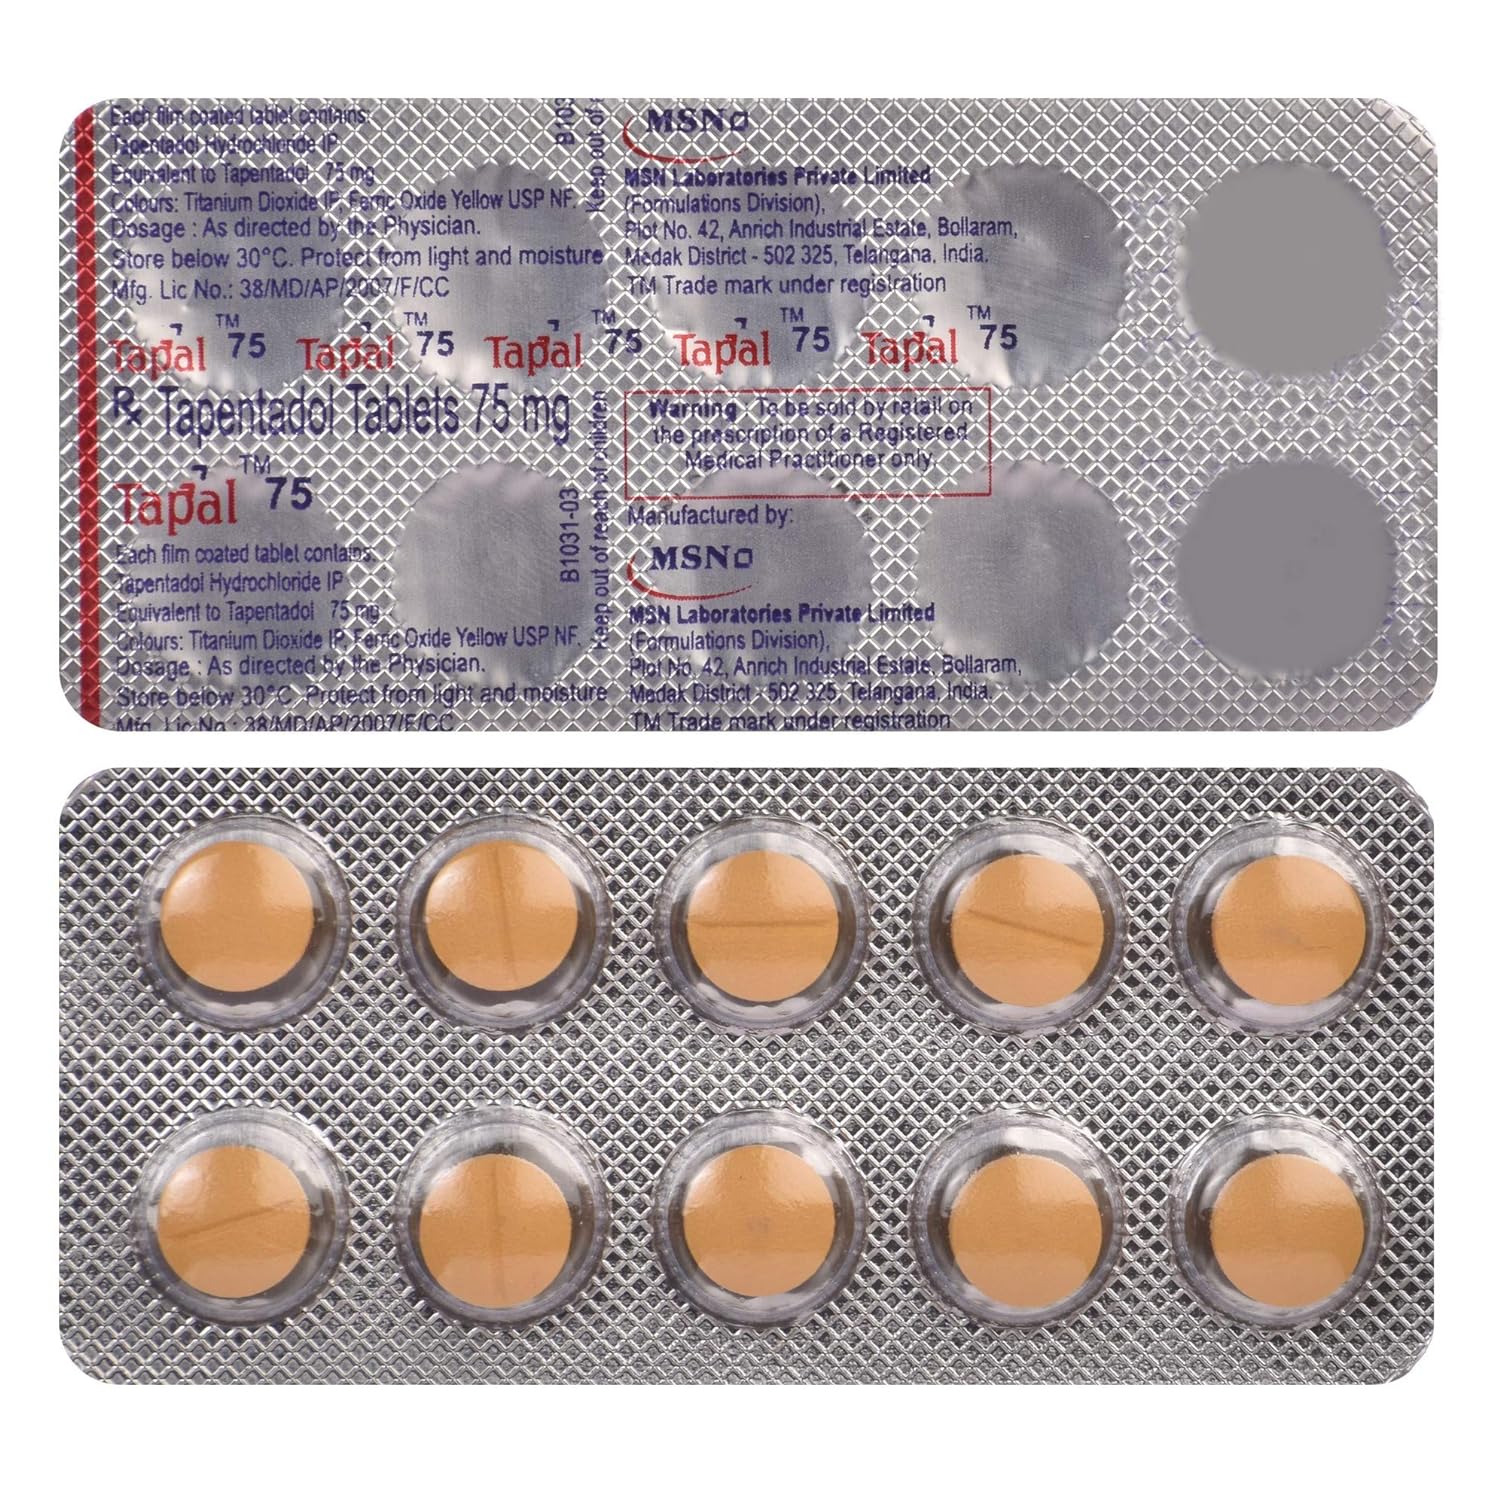 tapentadol 75 mg tablet